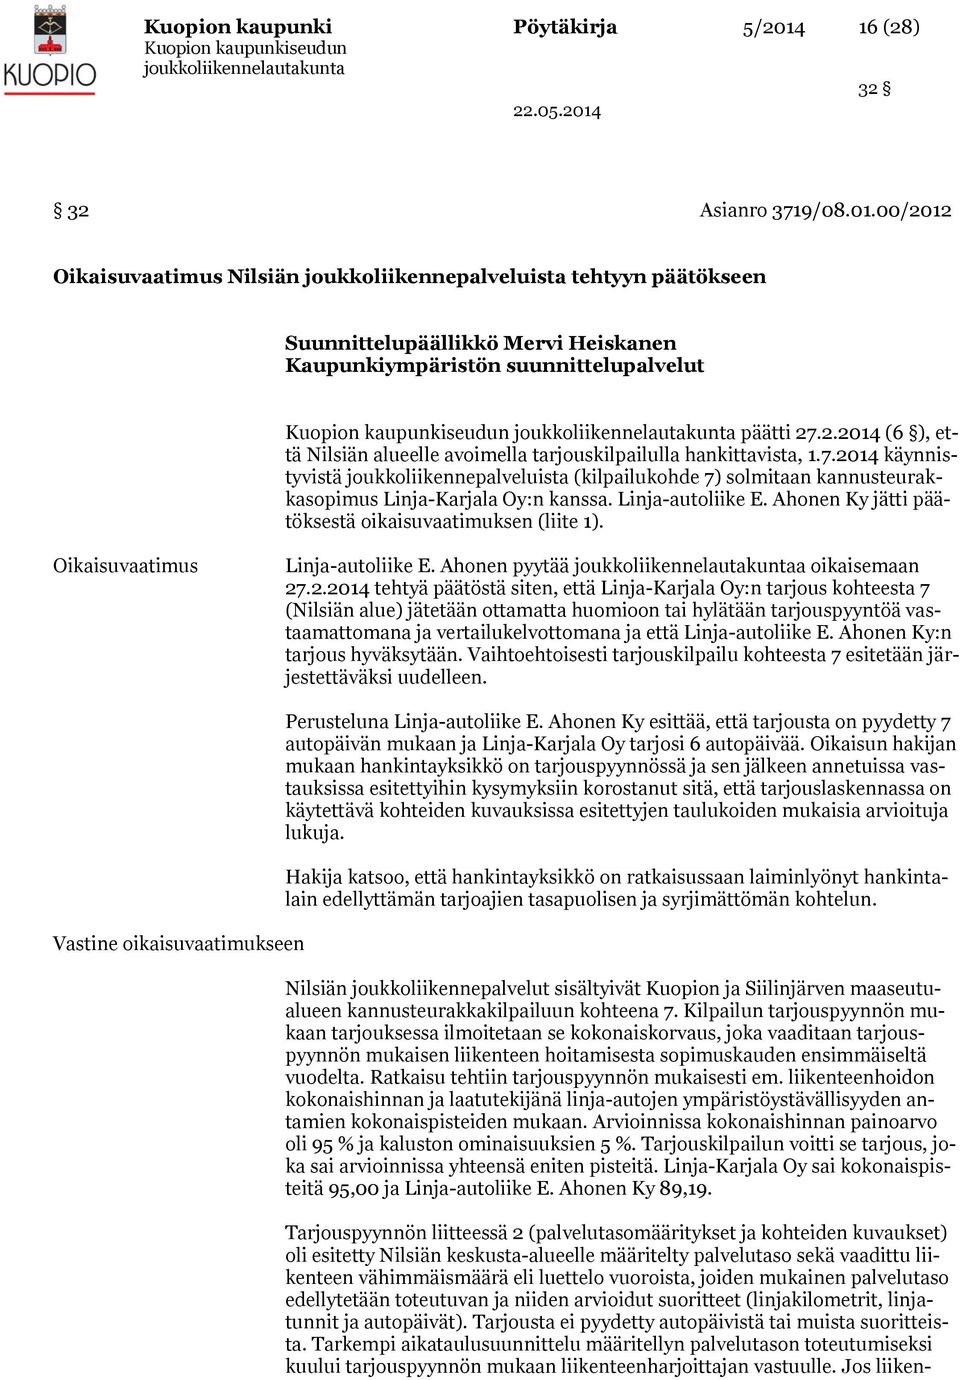 2014 käynnistyvistä joukkoliikennepalveluista (kilpailukohde 7) solmitaan kannusteurakkasopimus Linja-Karjala Oy:n kanssa. Linja-autoliike E. Ahonen Ky jätti päätöksestä oikaisuvaatimuksen (liite 1).